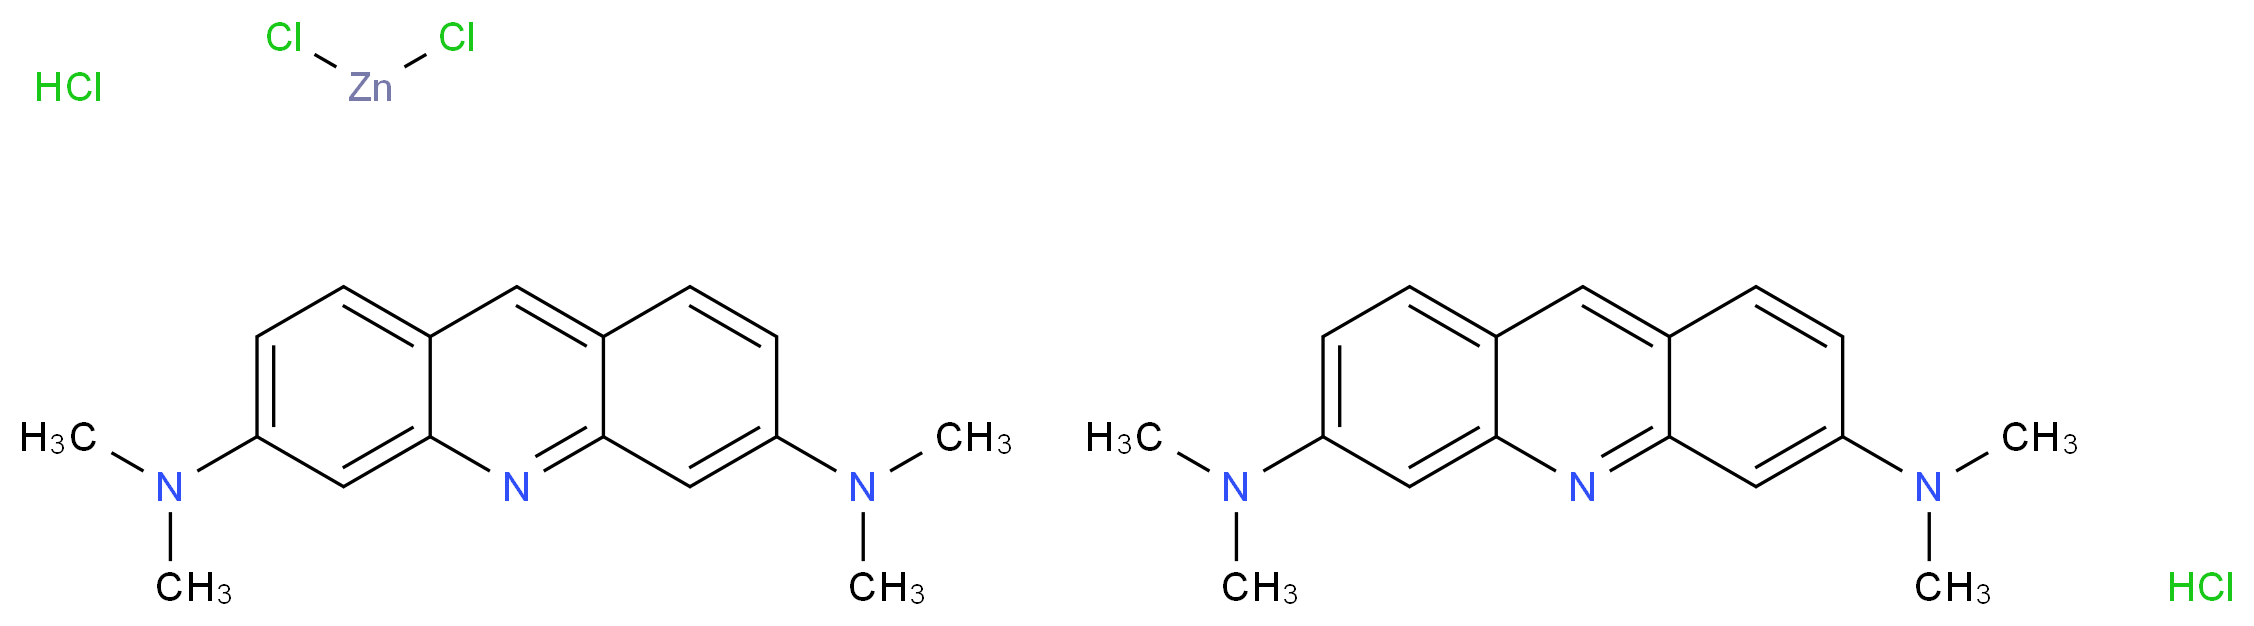 Acridine Orange hemi(zinc chloride) salt_Molecular_structure_CAS_10127-02-3)